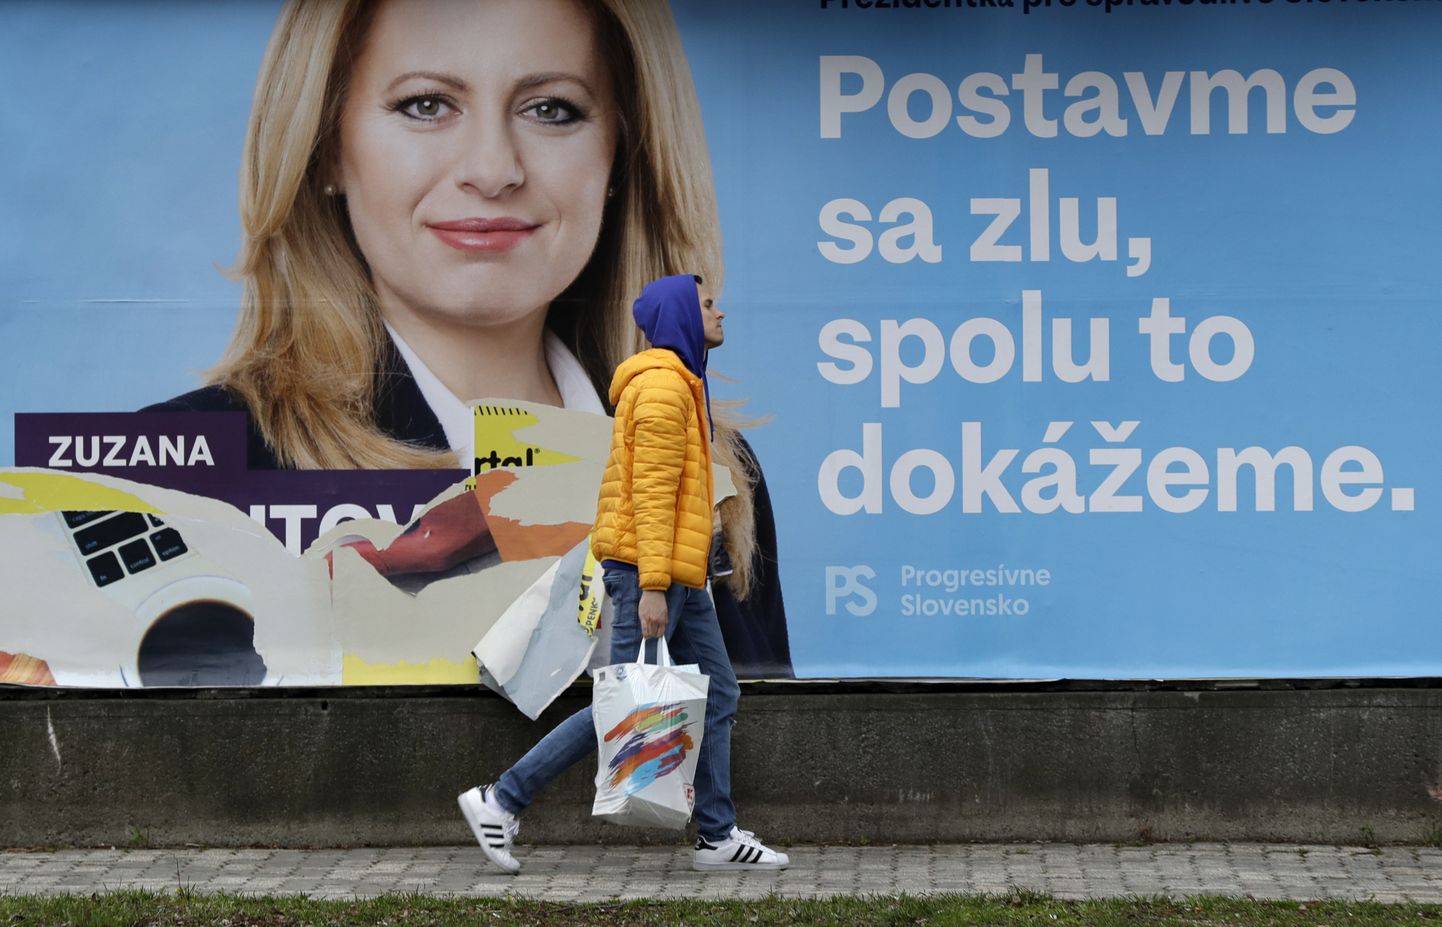 Par vēlēšanu favorīti uzskatītās Zuzanas Čaputovas priekšvēlēšanu aģitācijas plakāts Bratislavā